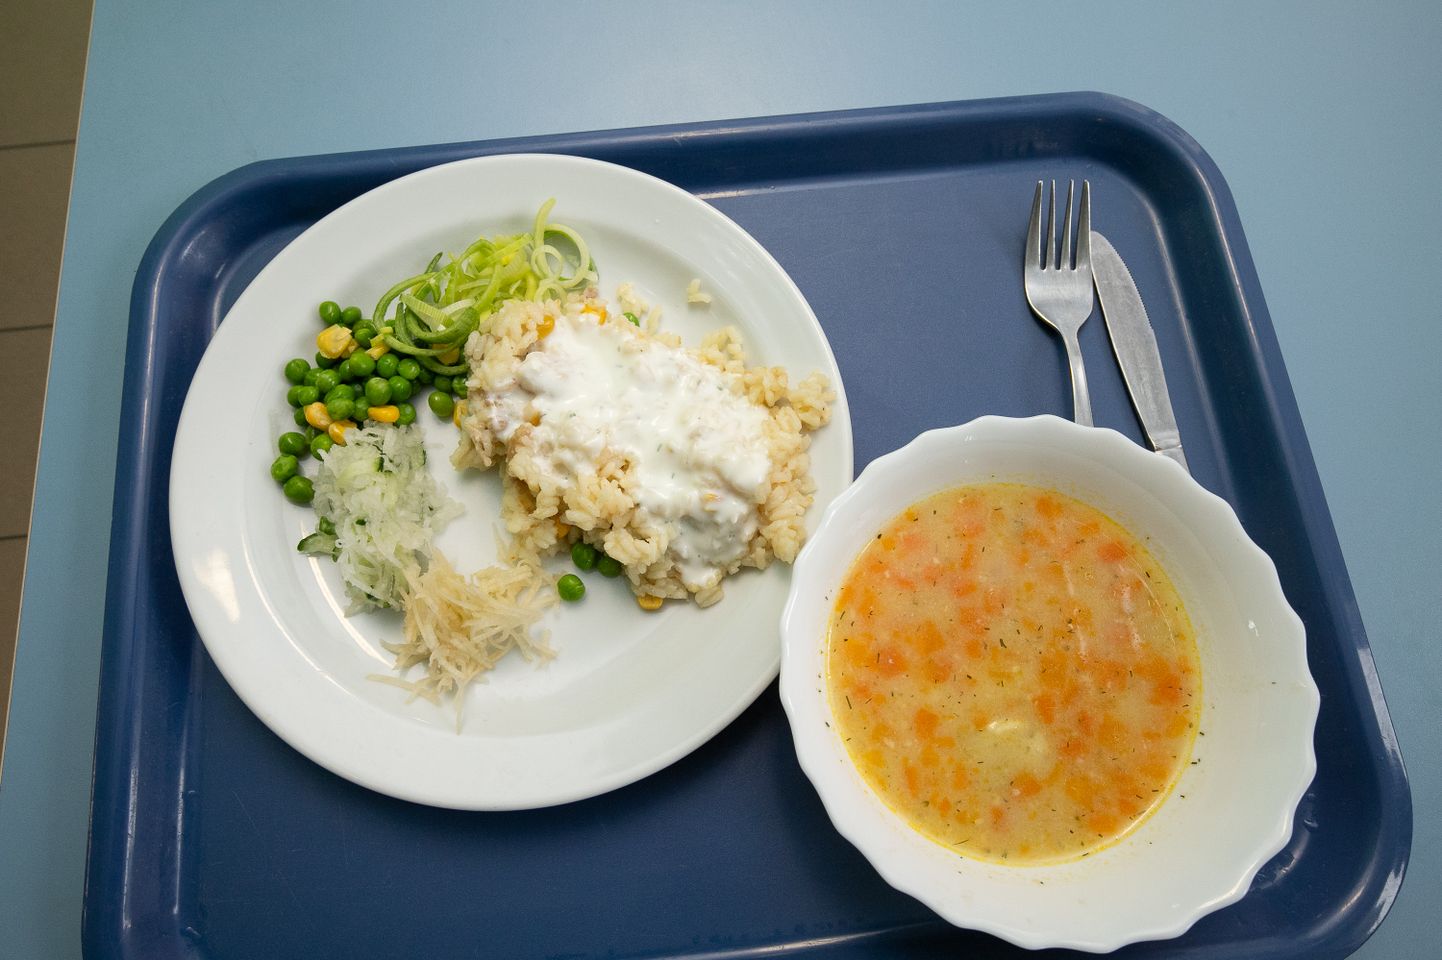 В начале октября прошла неделя открытых дверей в школьных столовых, чтобы не только учащиеся, но и другие желающие могли попробовать блюда. На фото -  ризотто с курицей и суп из лосося.